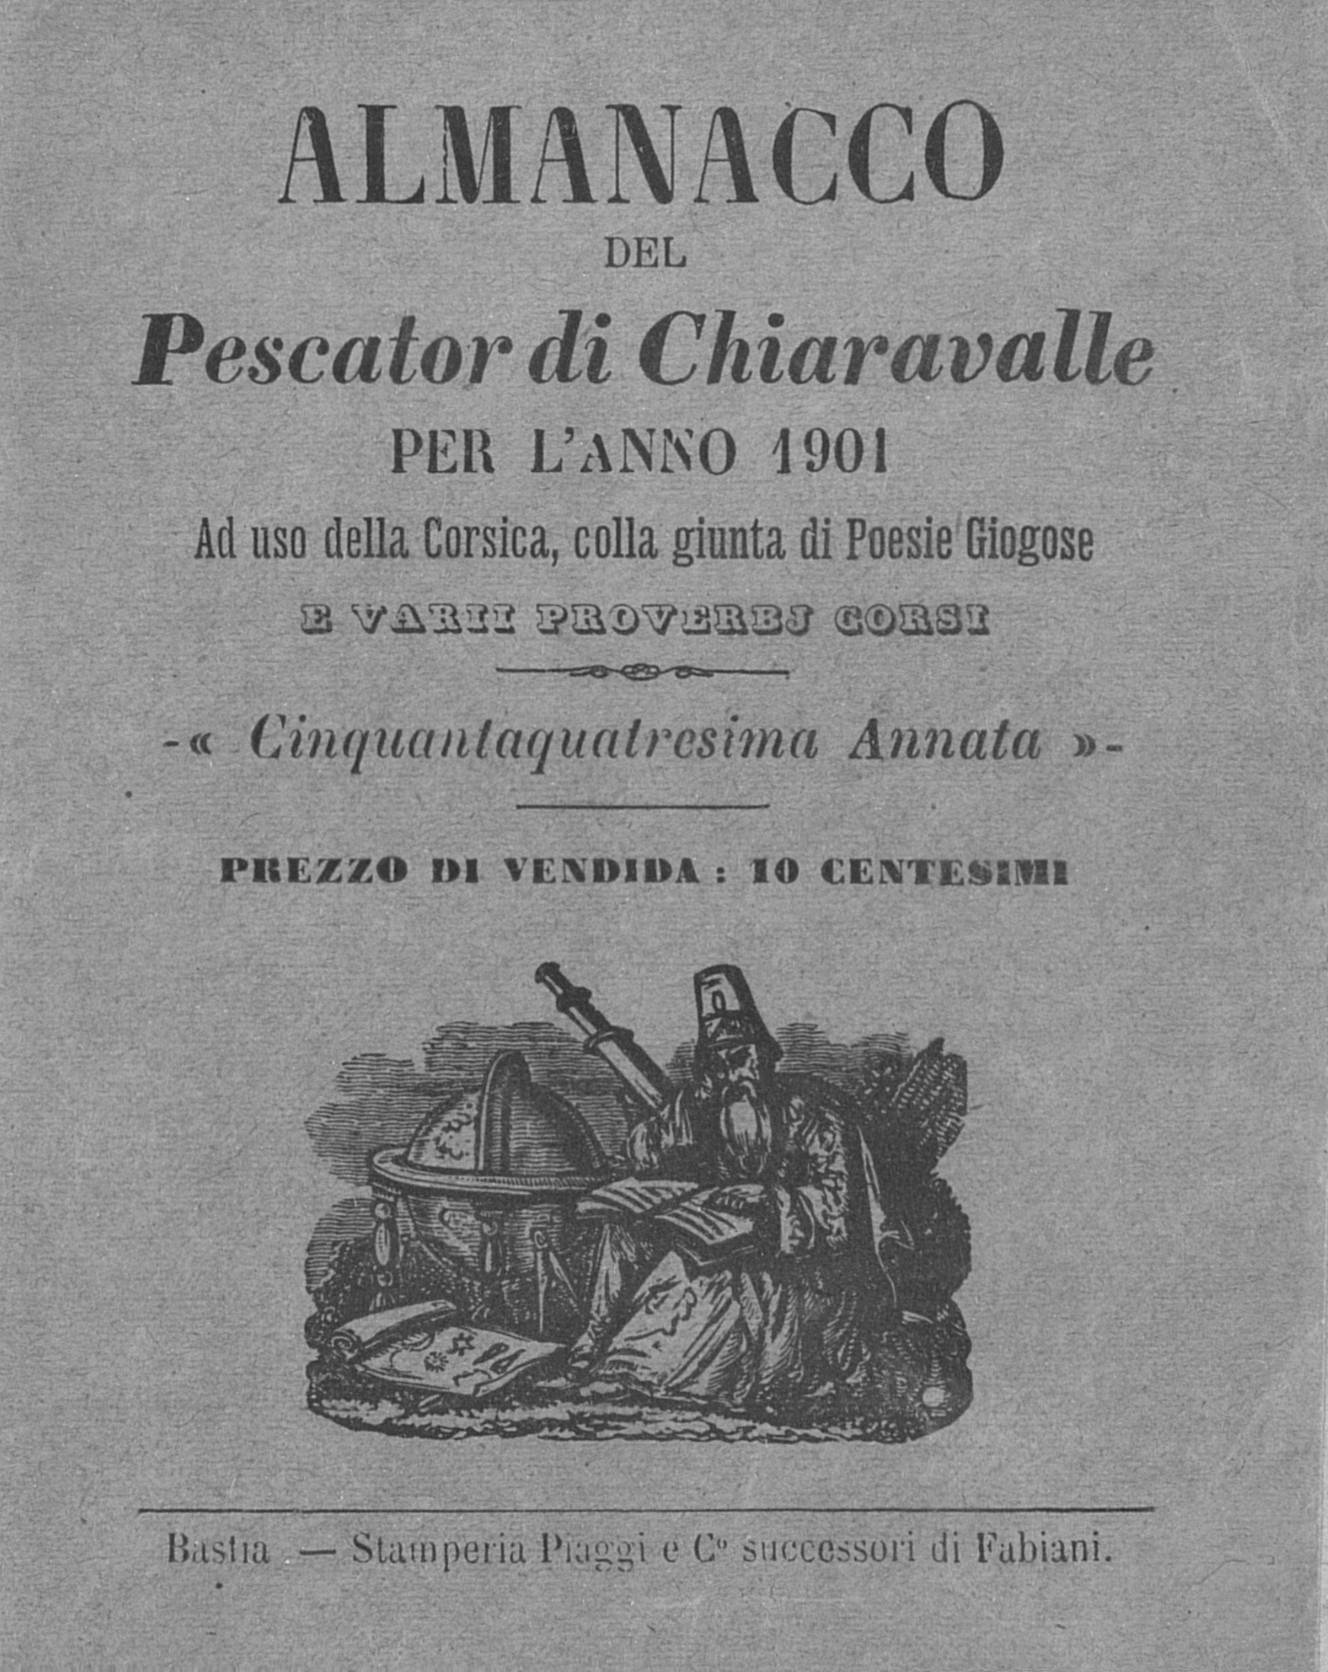 >Almanacco del Pescator di Chiaravalle per l'anno 1901